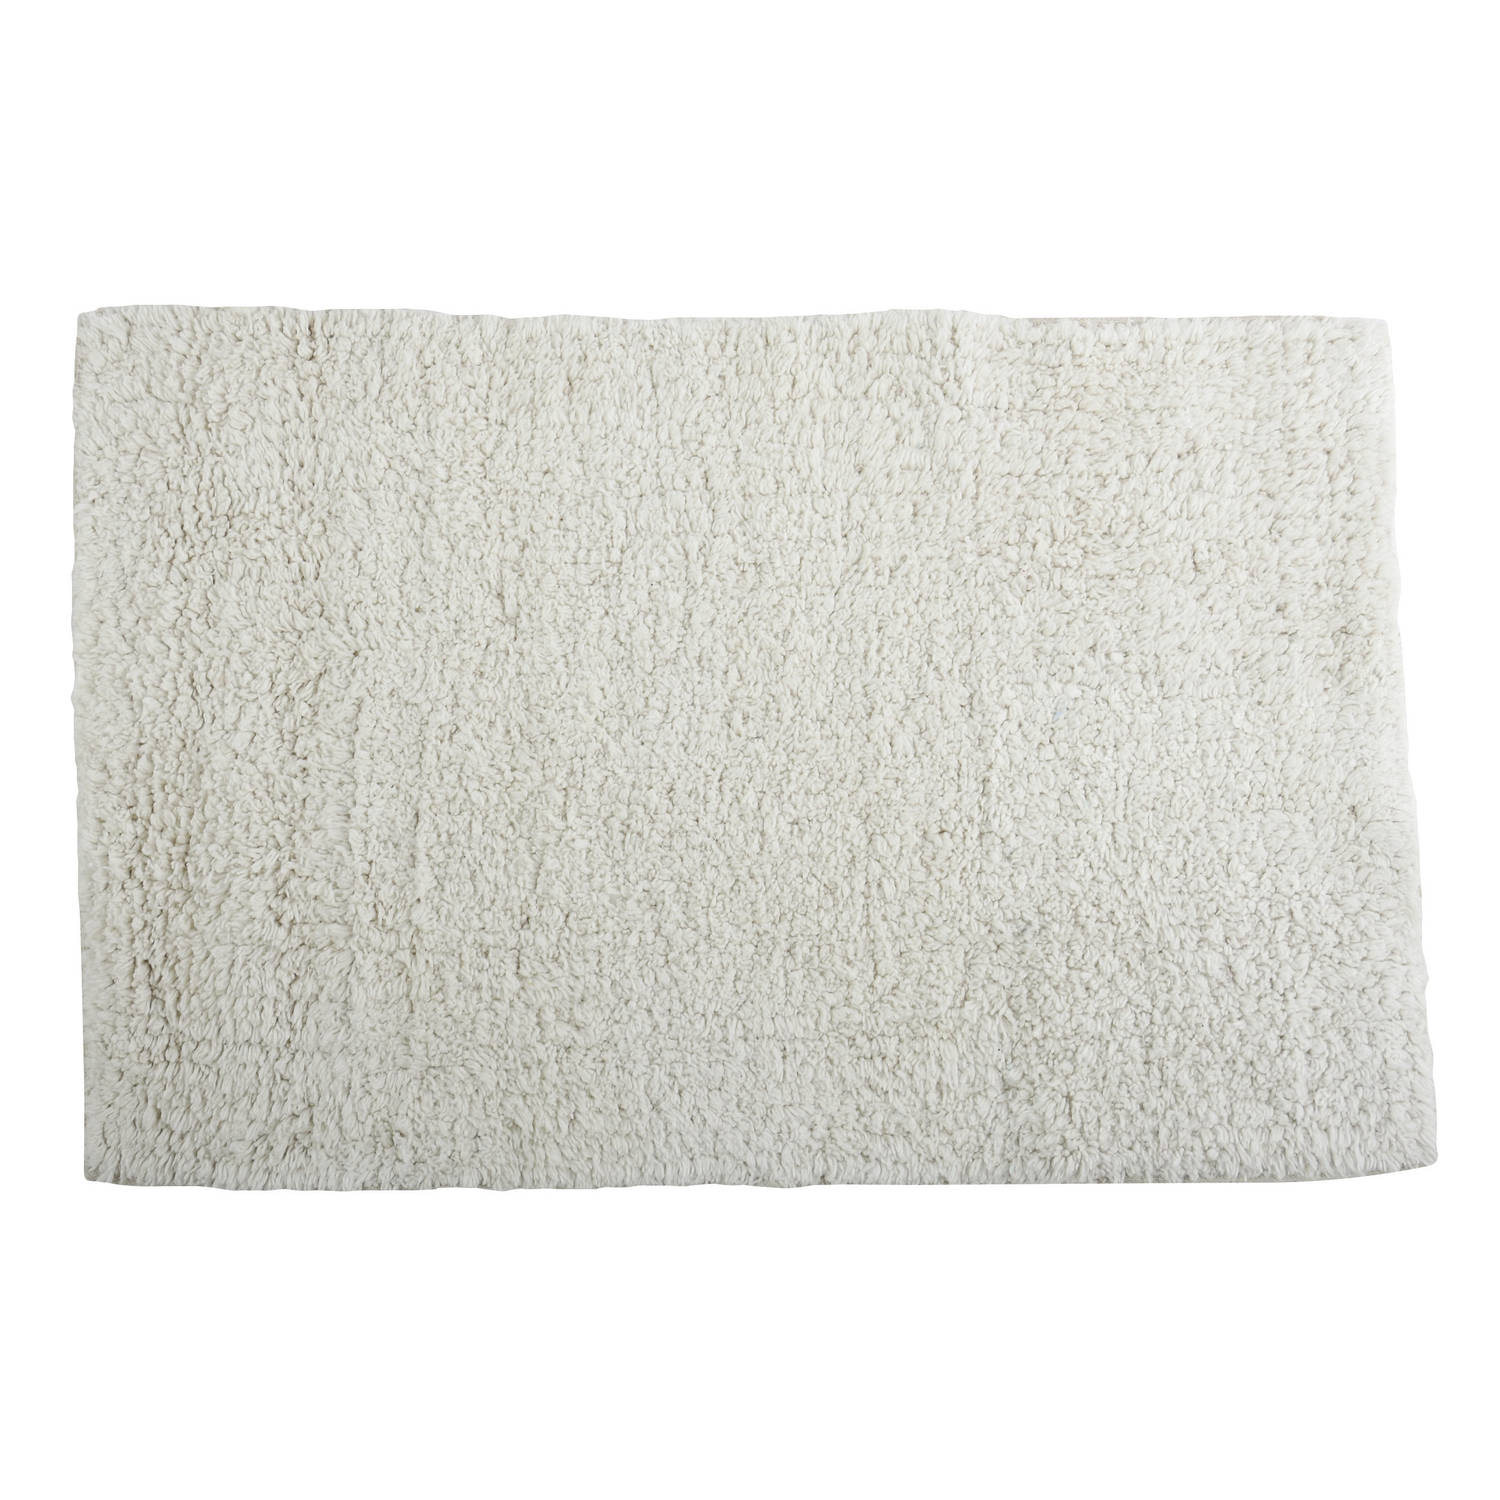 MSV Badkamerkleedje/badmat tapijtje - voor op de vloer - ivoor wit - 40 x 60 cm - polyester/katoen